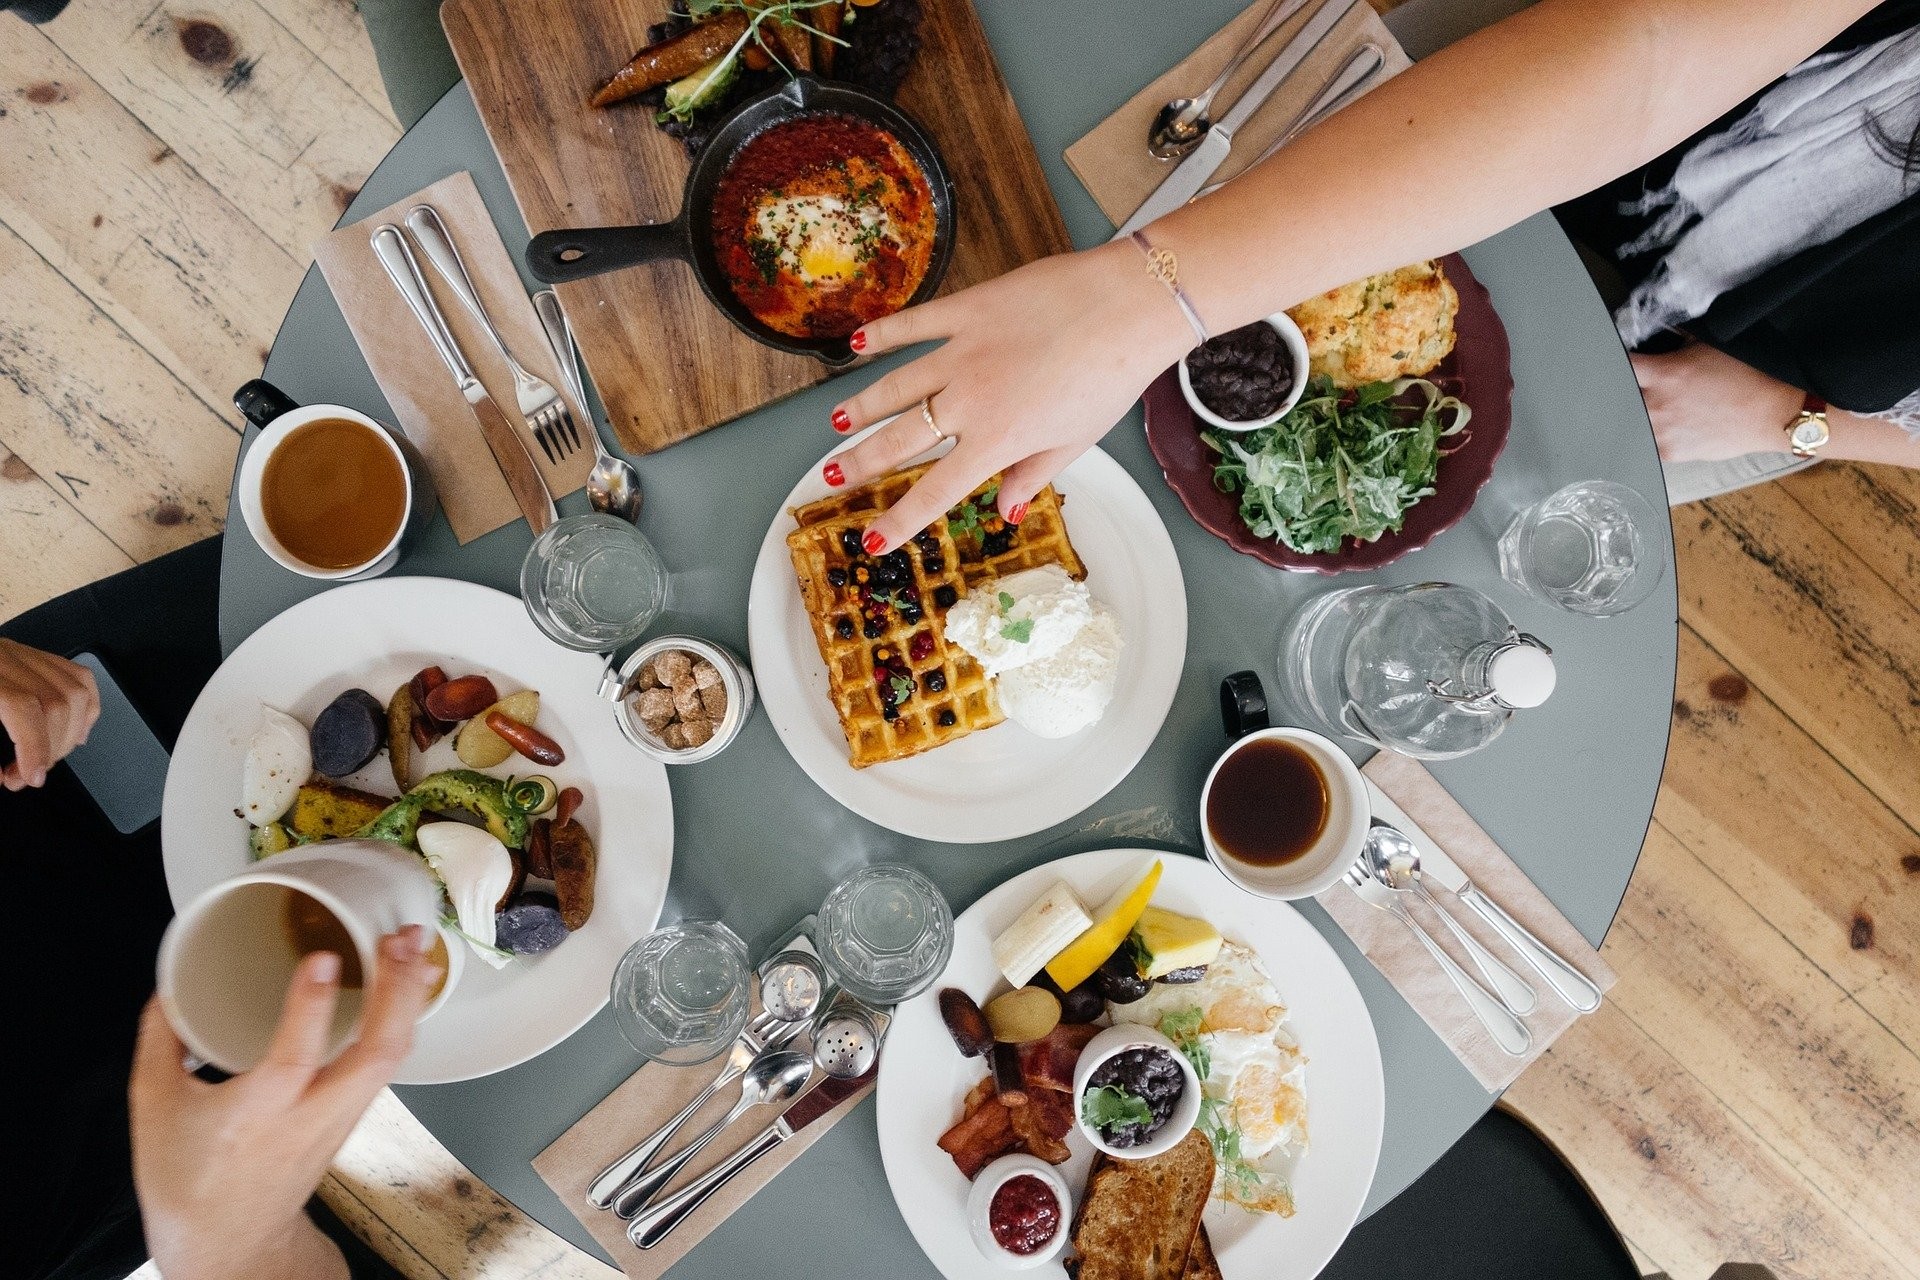 Estudo mostra que tomar um café da manhã reforçado pode ajudar a emagrecer. Acima: mesa arrumada para o café da manhã. (Foto: Free-Photos/Pixabay )